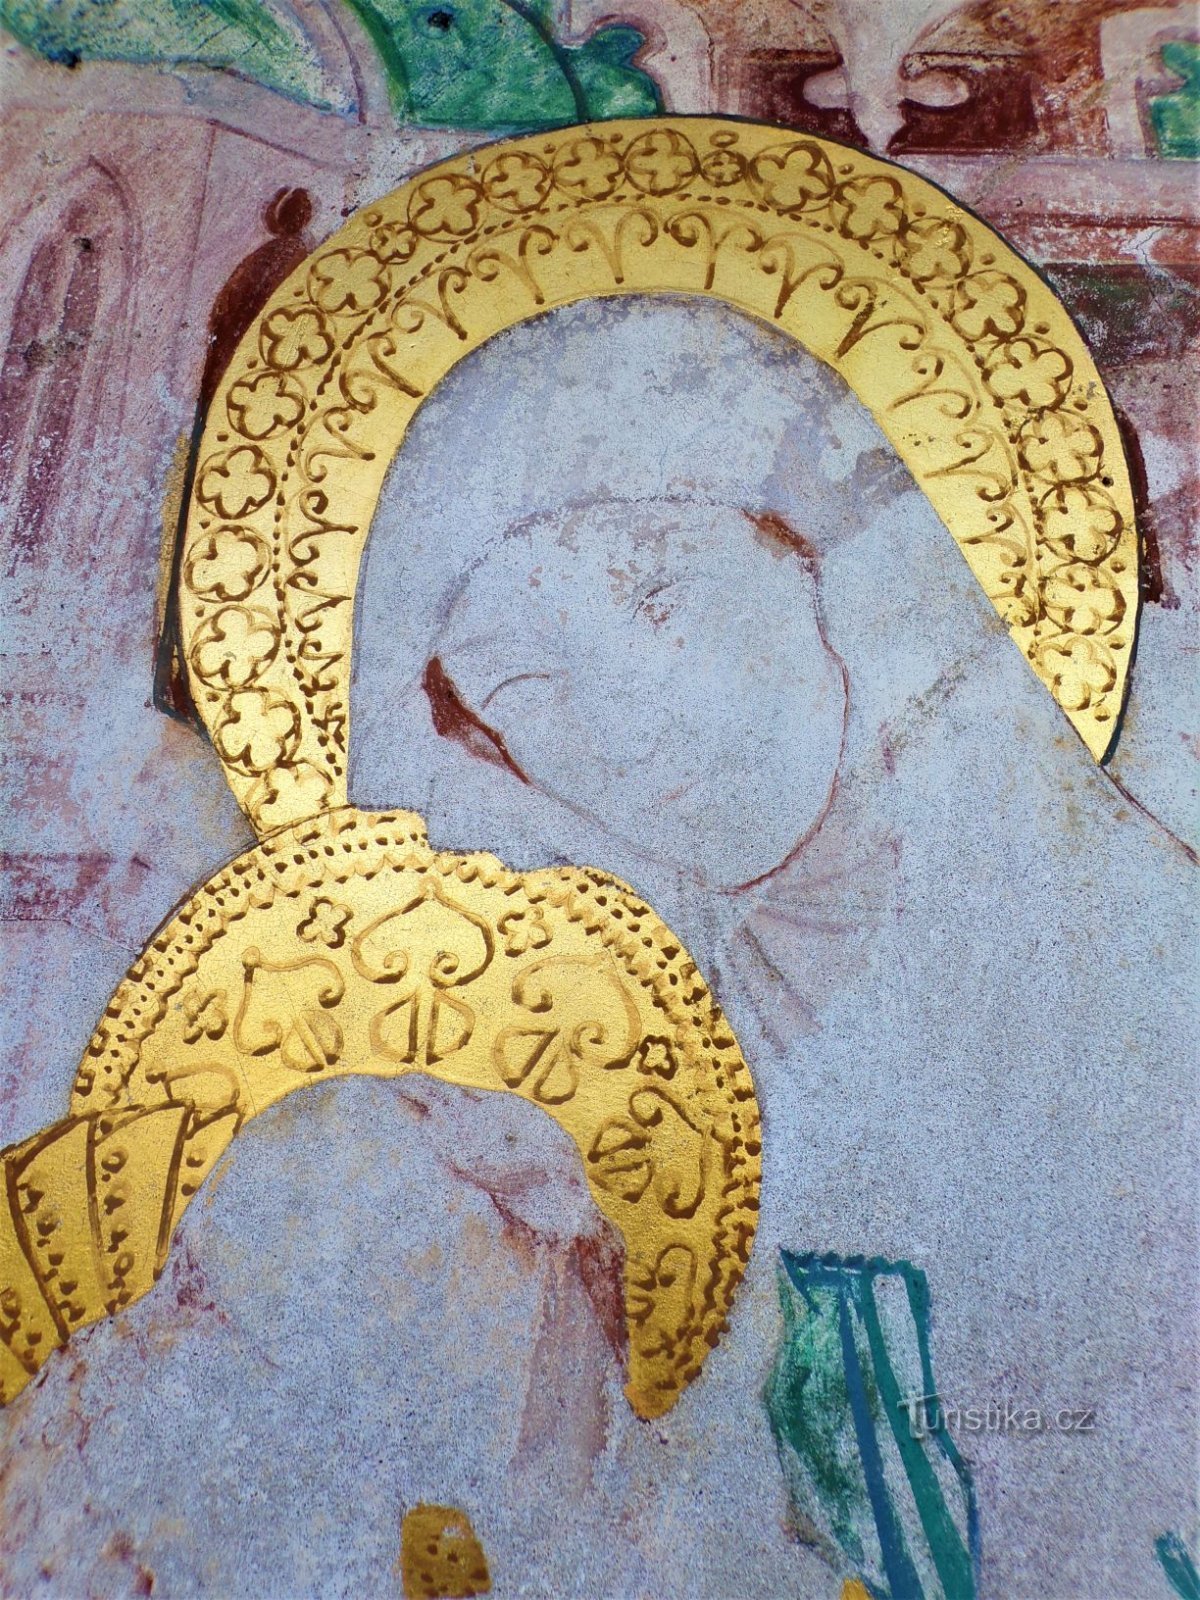 Particolare di S. Anna nel dipinto nella cappella di S. Anny (Dobřenice, 8.5.2021 maggio XNUMX)